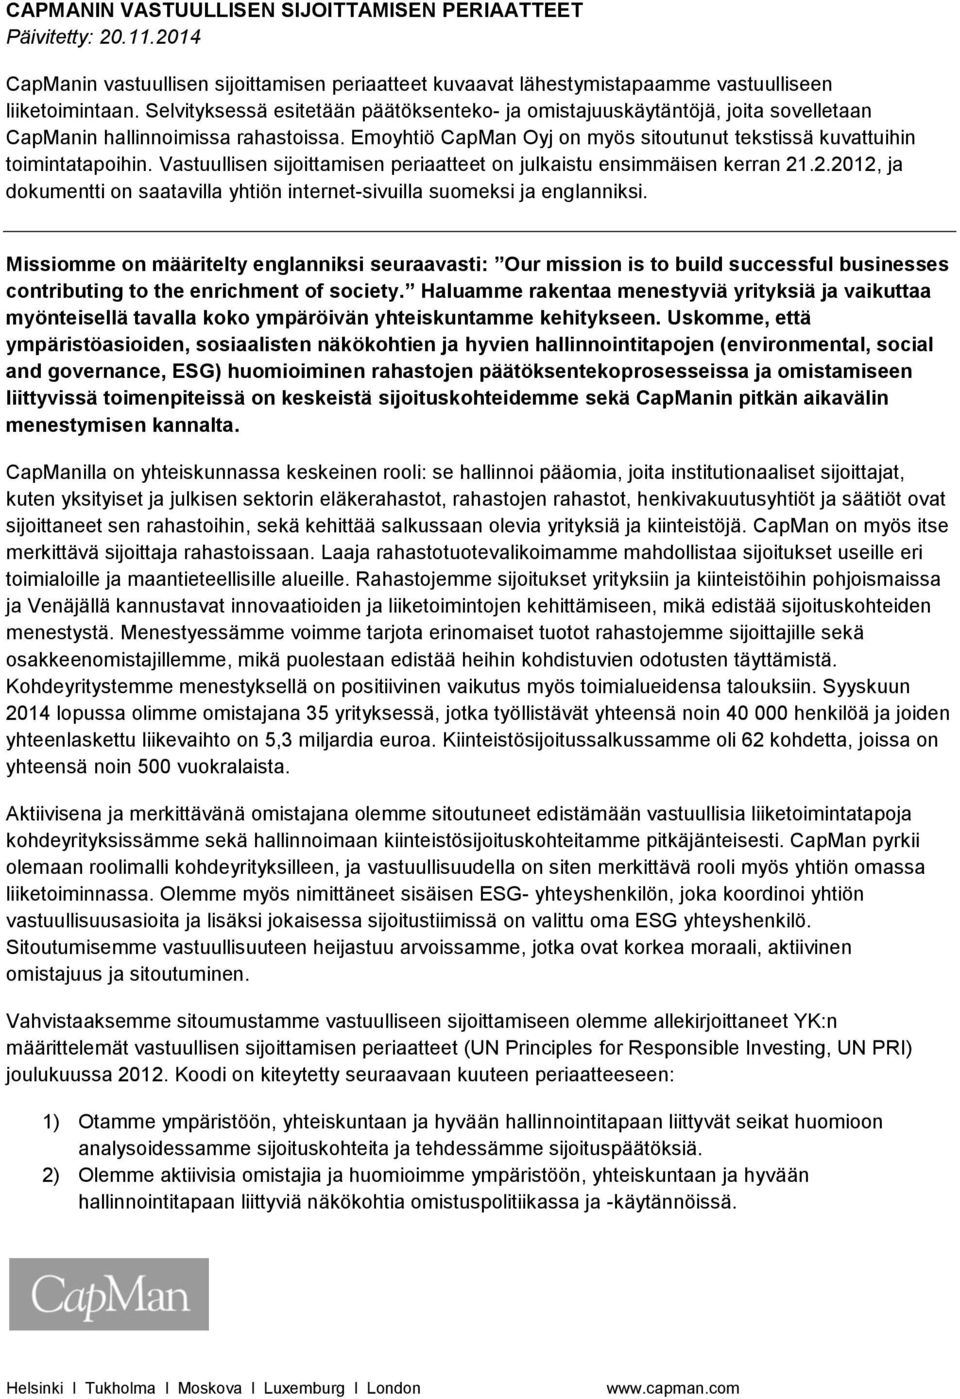 Vastuullisen sijoittamisen periaatteet on julkaistu ensimmäisen kerran 21.2.2012, ja dokumentti on saatavilla yhtiön internet-sivuilla suomeksi ja englanniksi.